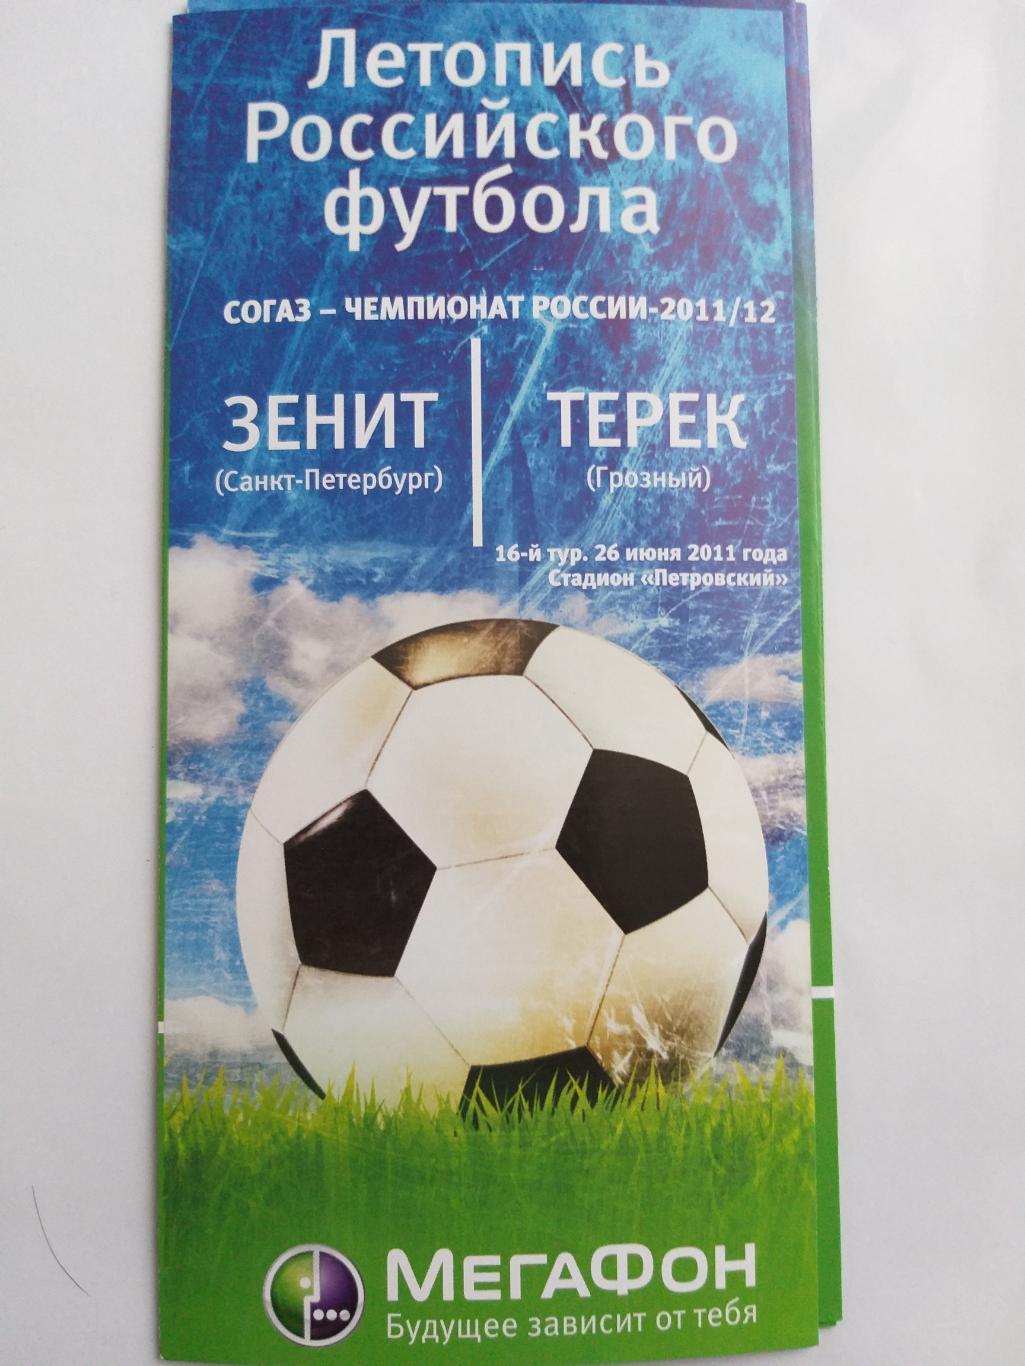 Зенит-Терек(Грозный) 2011 мегафон